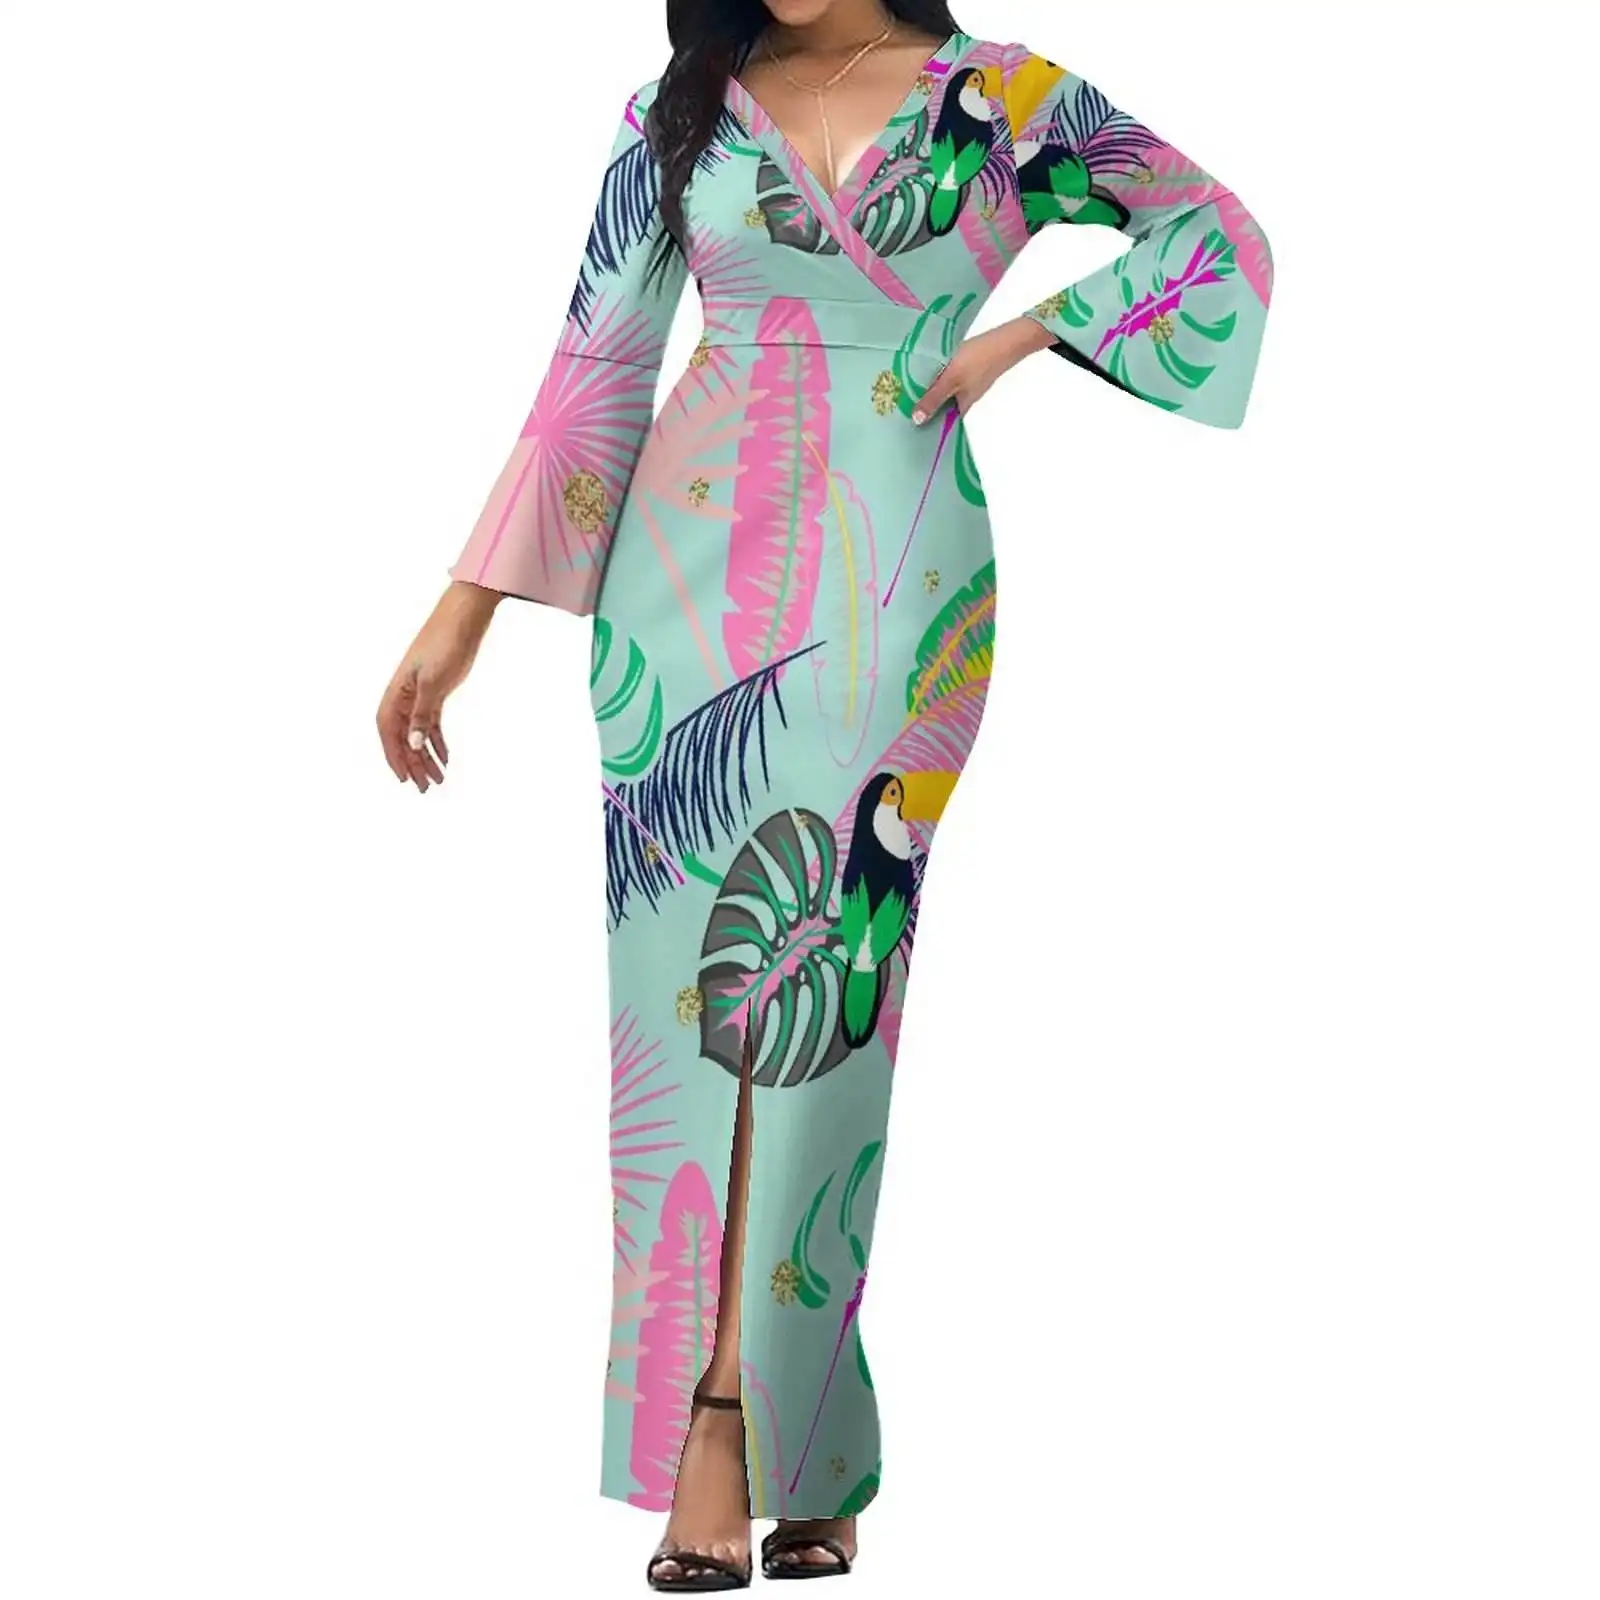 منفذ المصنع 1 موك أزياء الإناث فستان طويل هاواي البولينيزية نمط زهرة طباعة النساء شخصية اللباس دافئ المضادة للتجاعيد